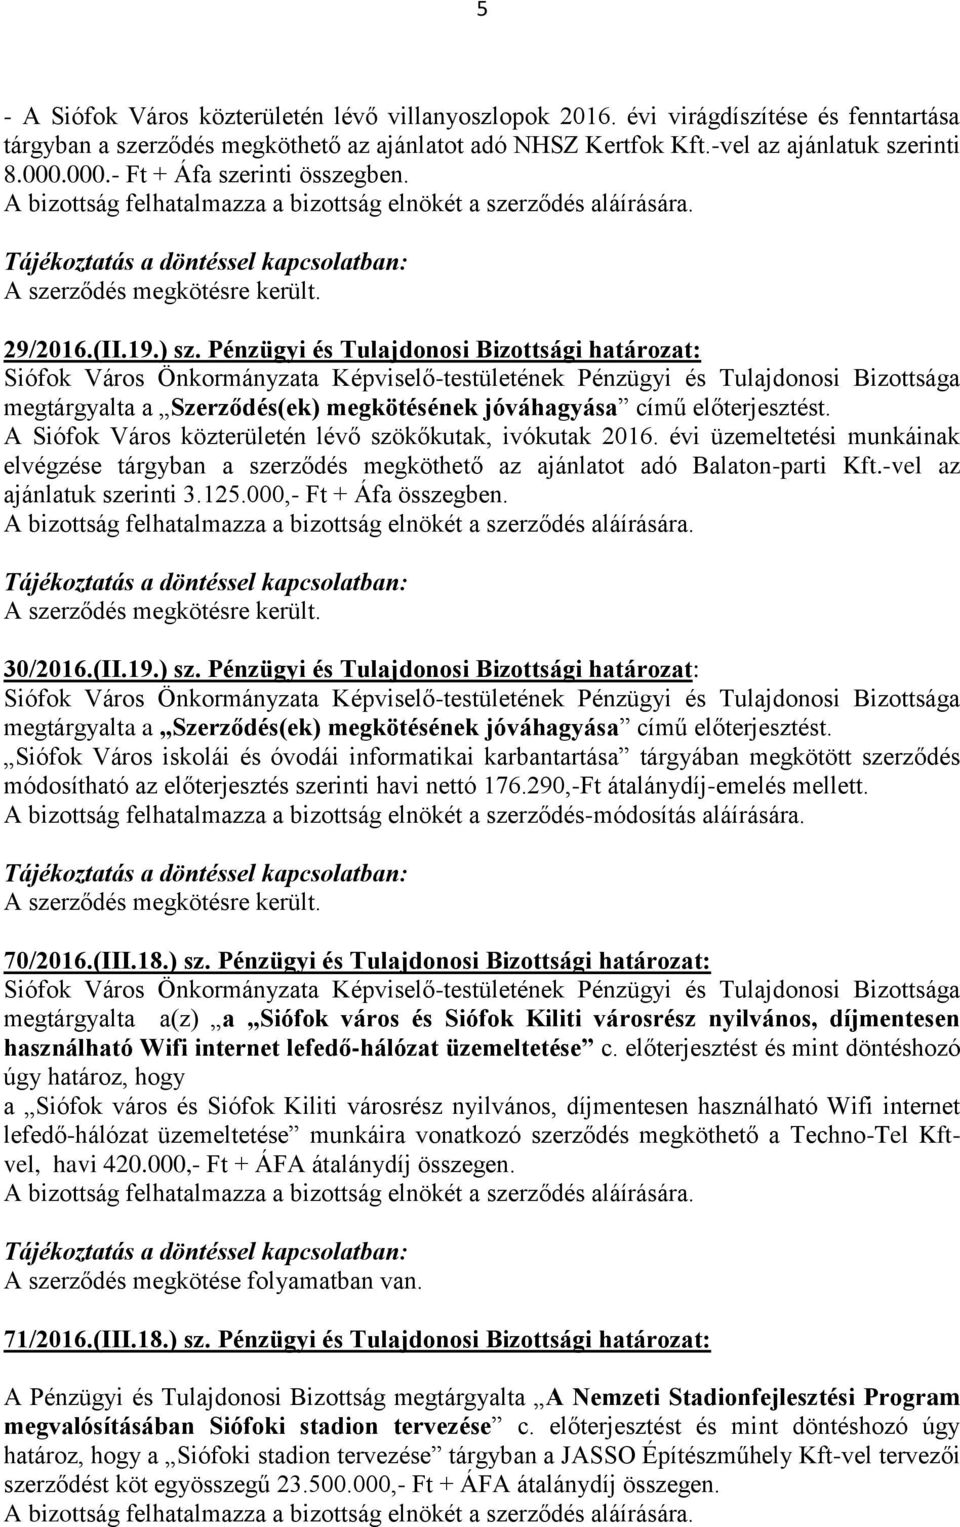 A Siófok Város közterületén lévő szökőkutak, ivókutak 2016. évi üzemeltetési munkáinak elvégzése tárgyban a szerződés megköthető az ajánlatot adó Balaton-parti Kft.-vel az ajánlatuk szerinti 3.125.